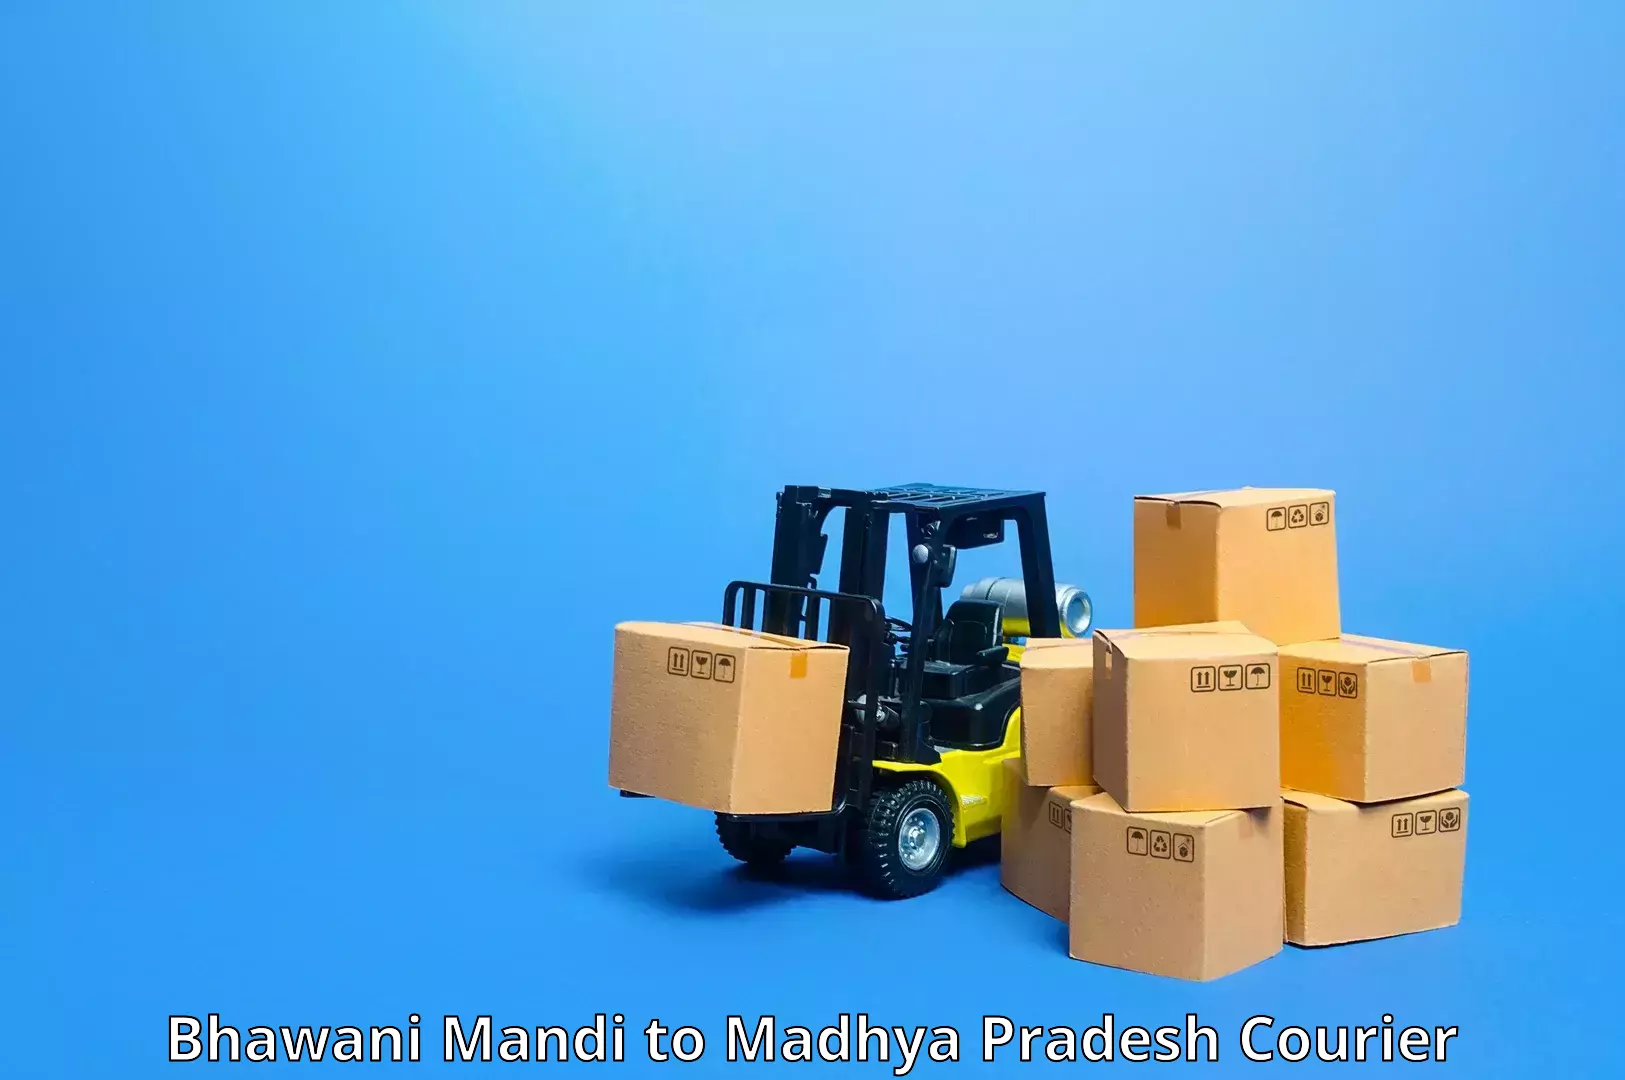 High-priority parcel service Bhawani Mandi to Madhya Pradesh